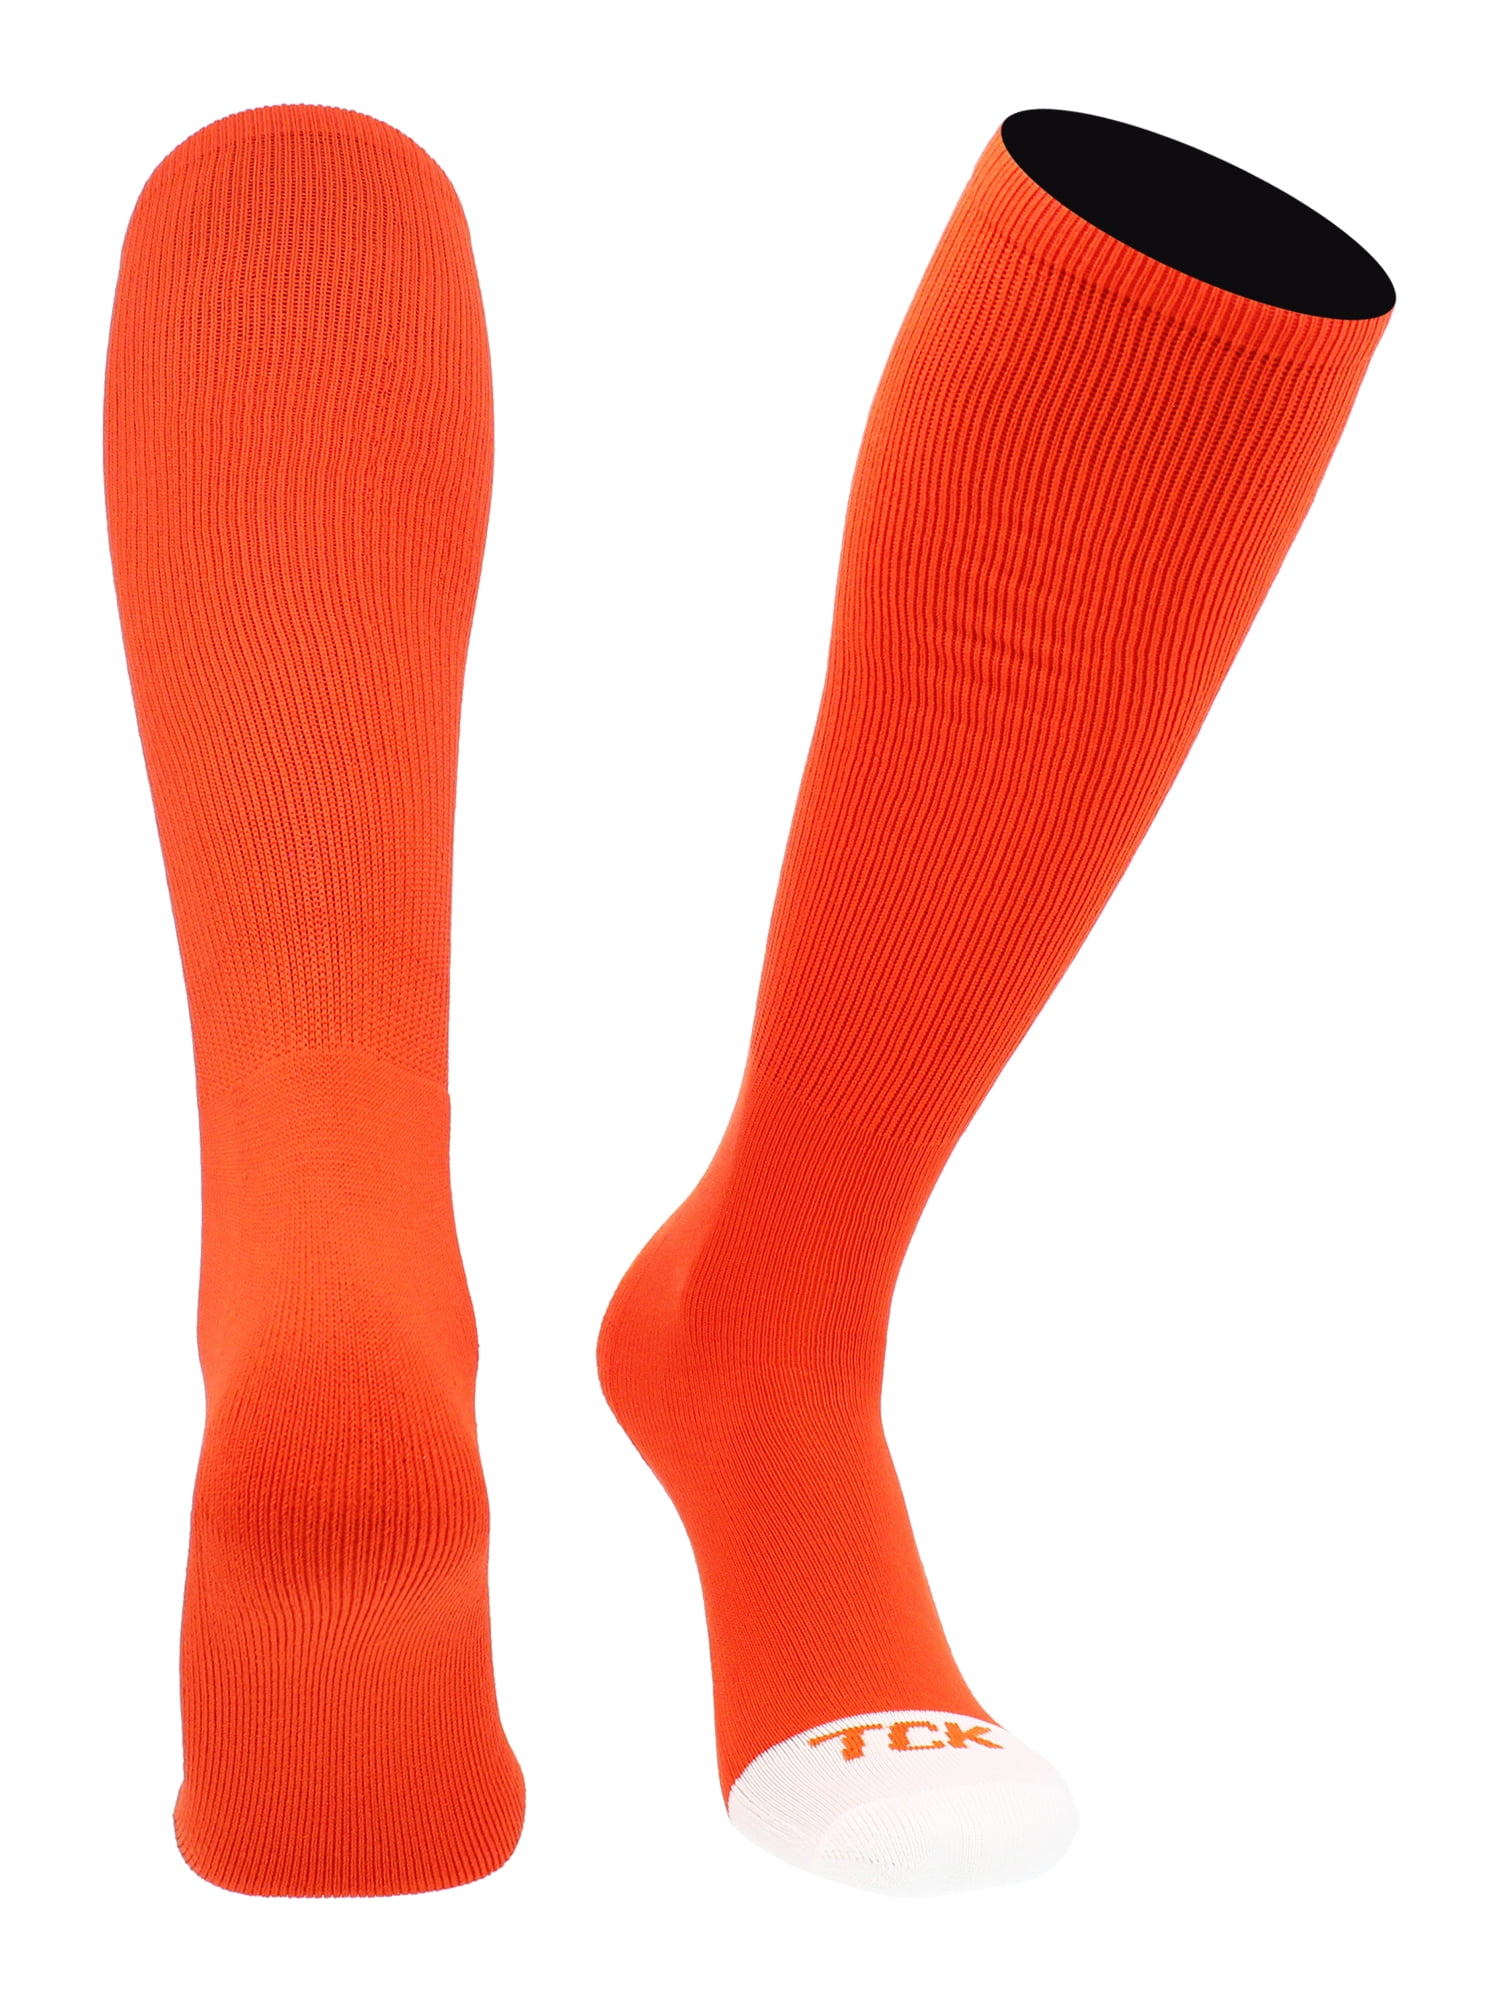 TCK Prosport Performance Tube Socks (Orange, Medium) - Walmart.com